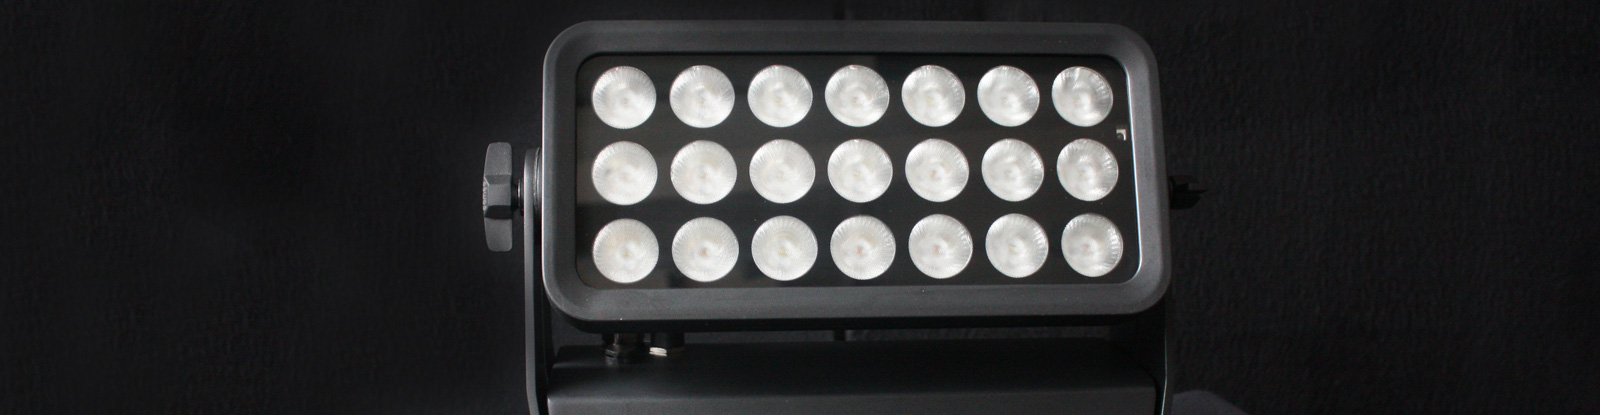 Cameo  Cameo ZENIT W300 Outdoor LED Wash Light  zur Vermietung in unserem Materialpool - Eventtechnik und Veranstaltungstechnik artworld:media